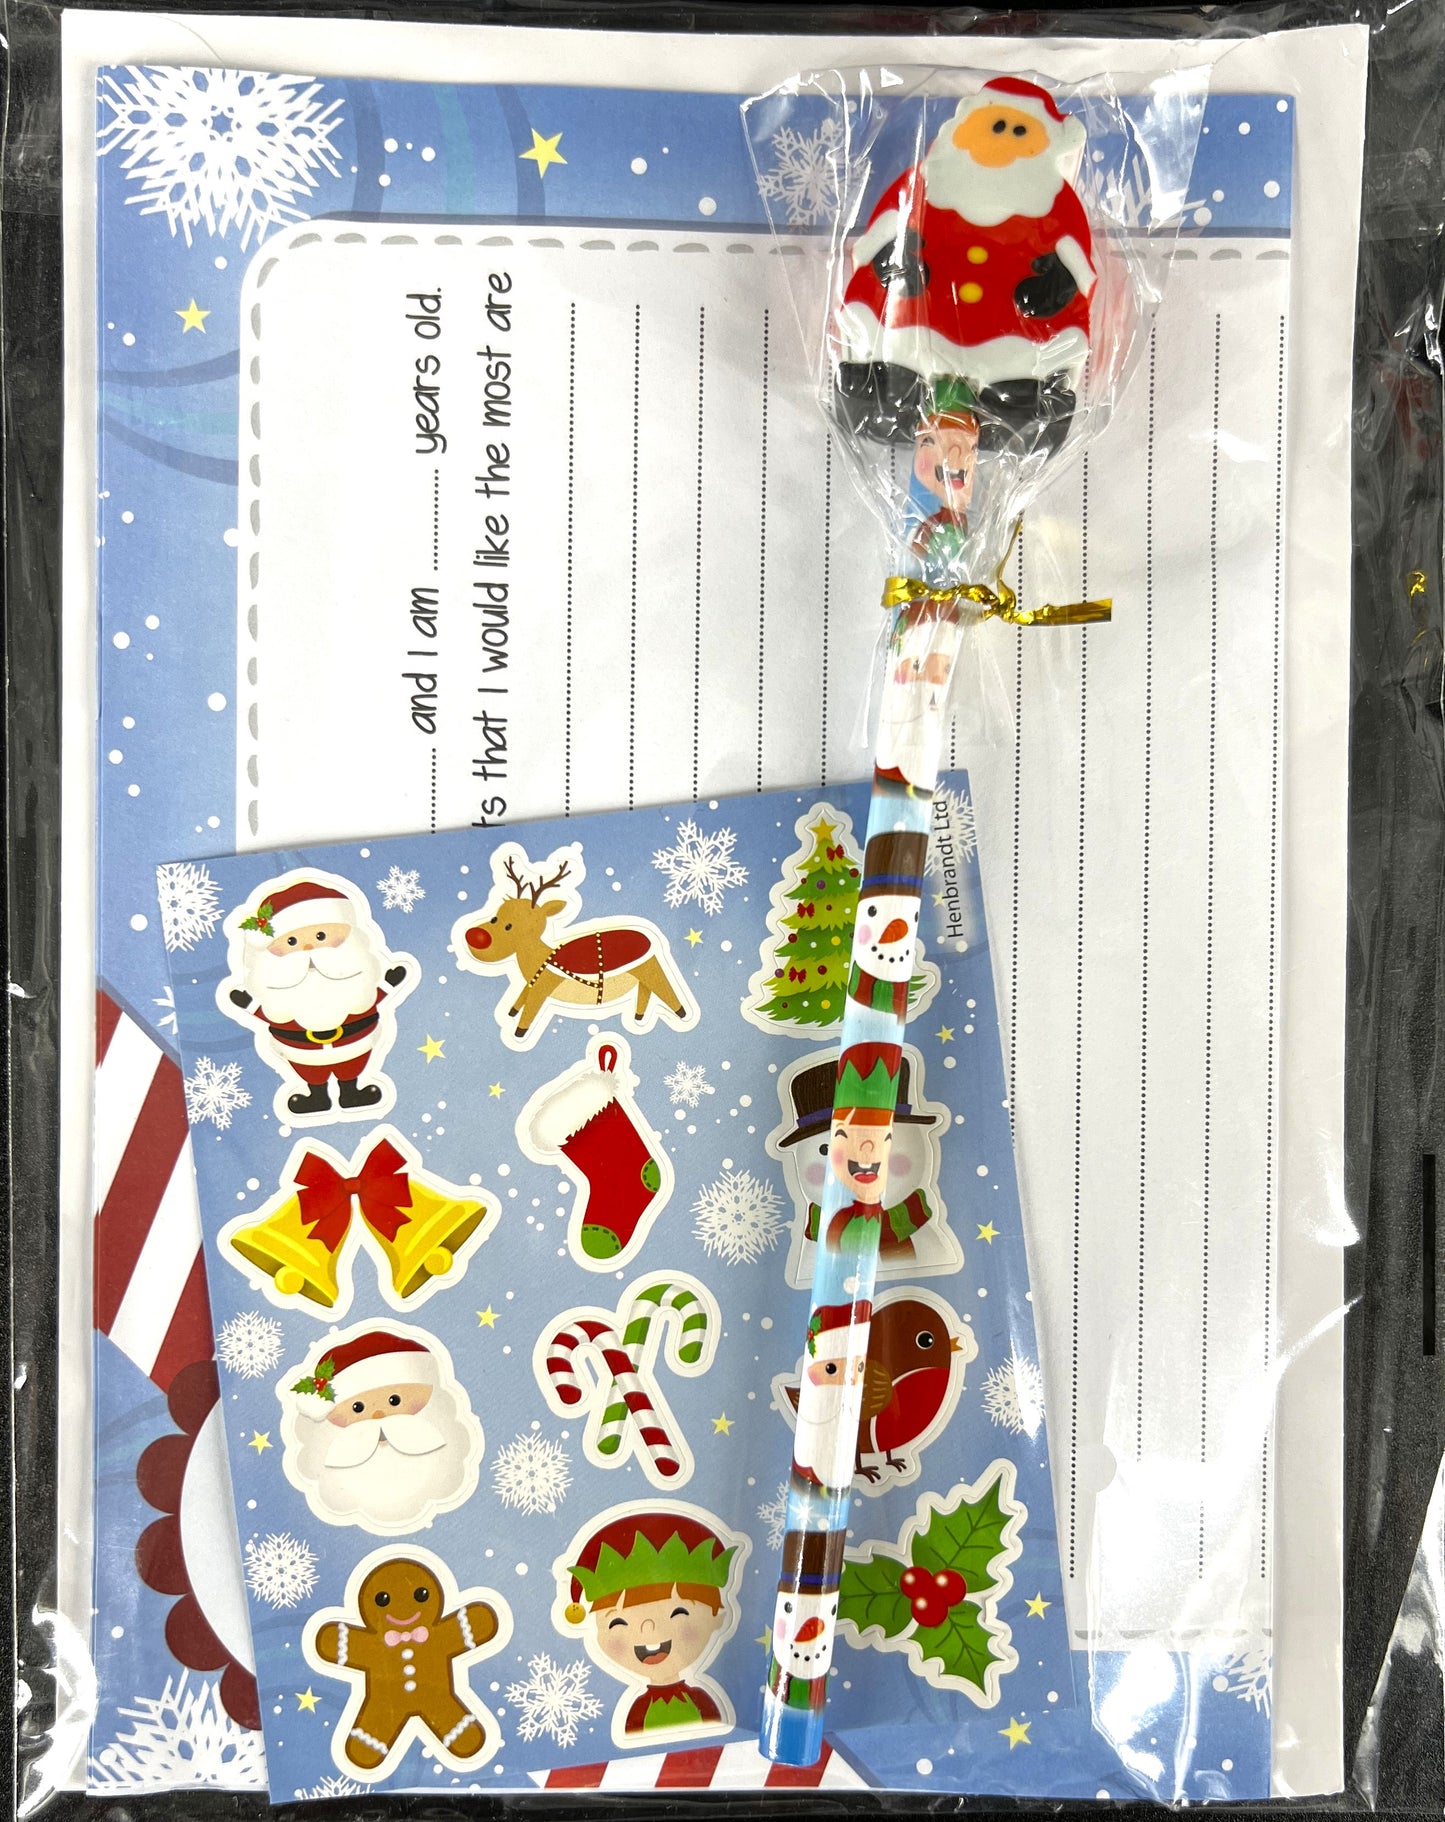 Letter to Santa Kids Christmas Writing 5 pc Set Father Christmas